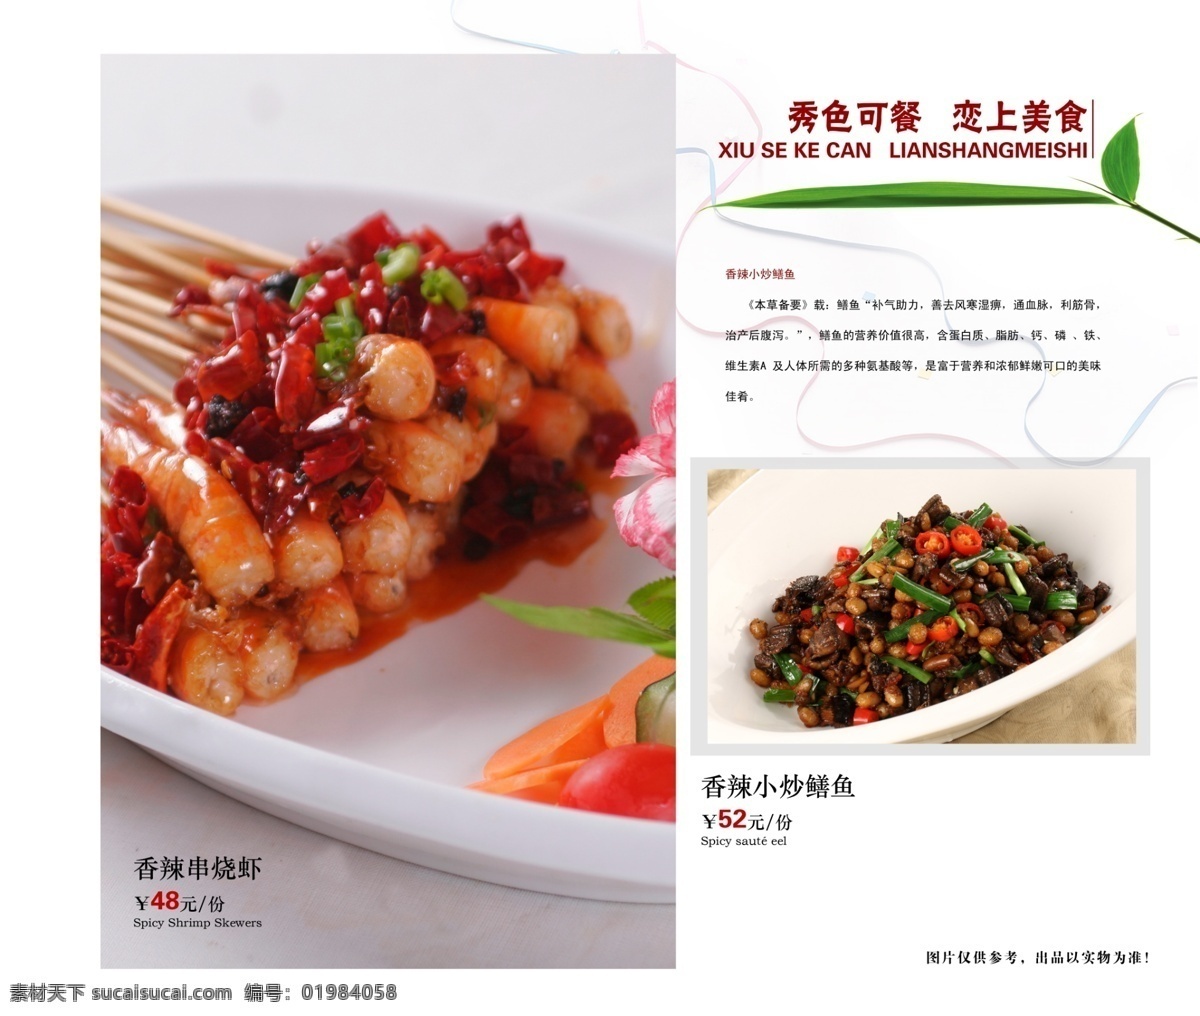 菜谱 菜单 虾 串 菜谱菜单设计 菜单菜谱 广告设计模板 源文件 白色